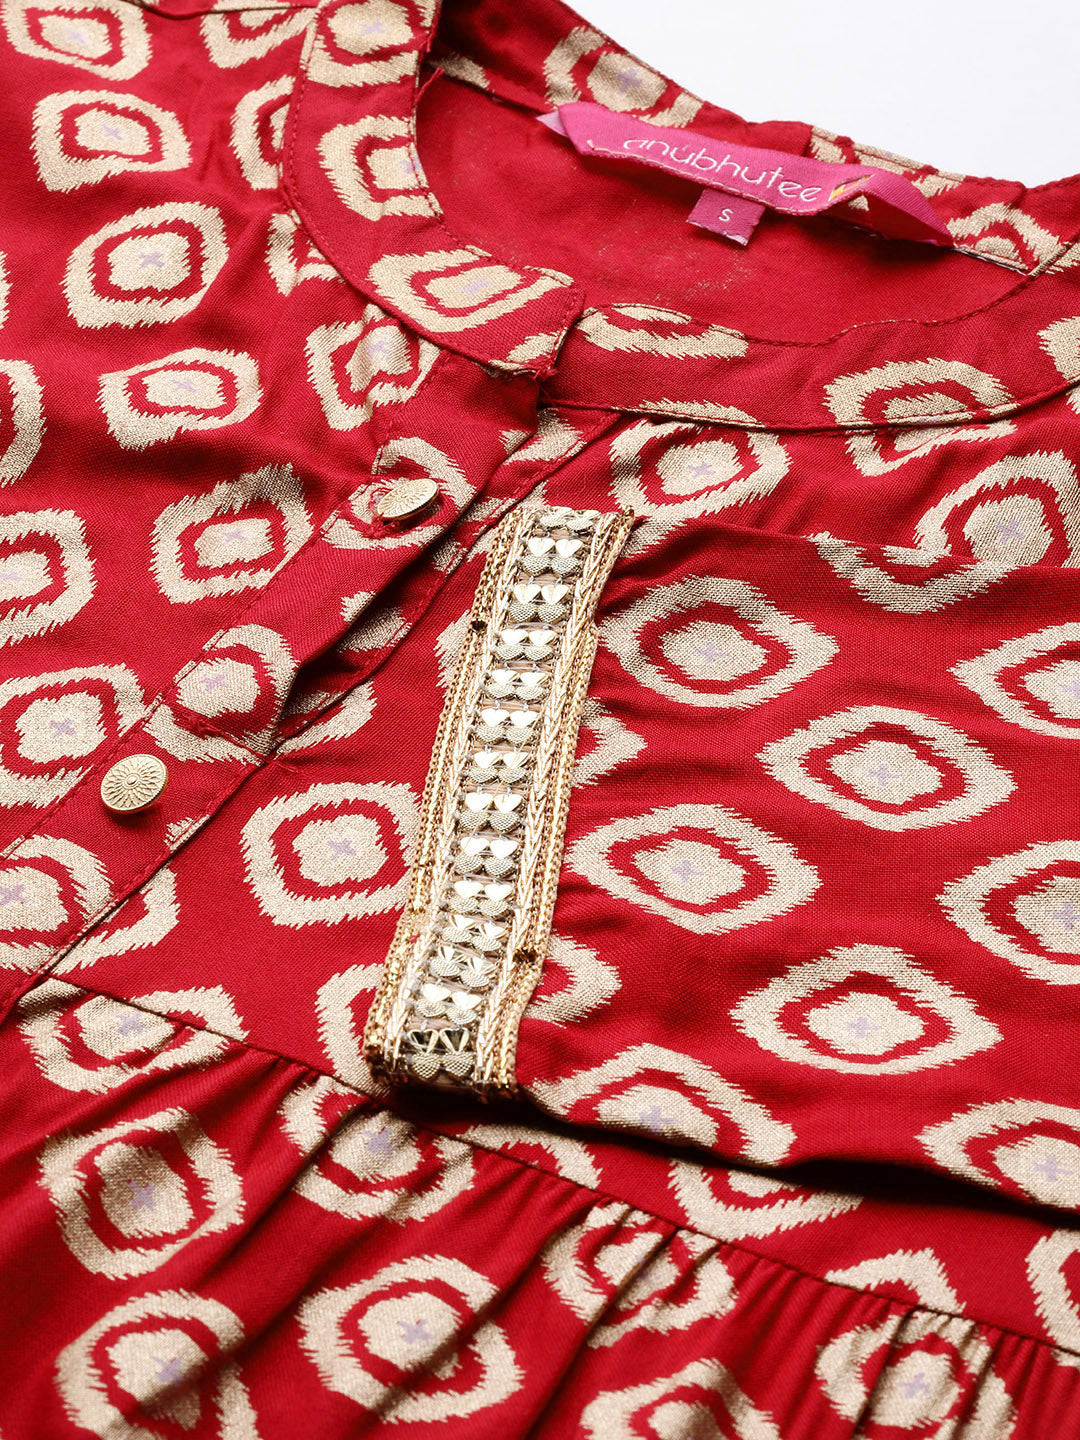 Anubhutee Women's Red Printed Tunic